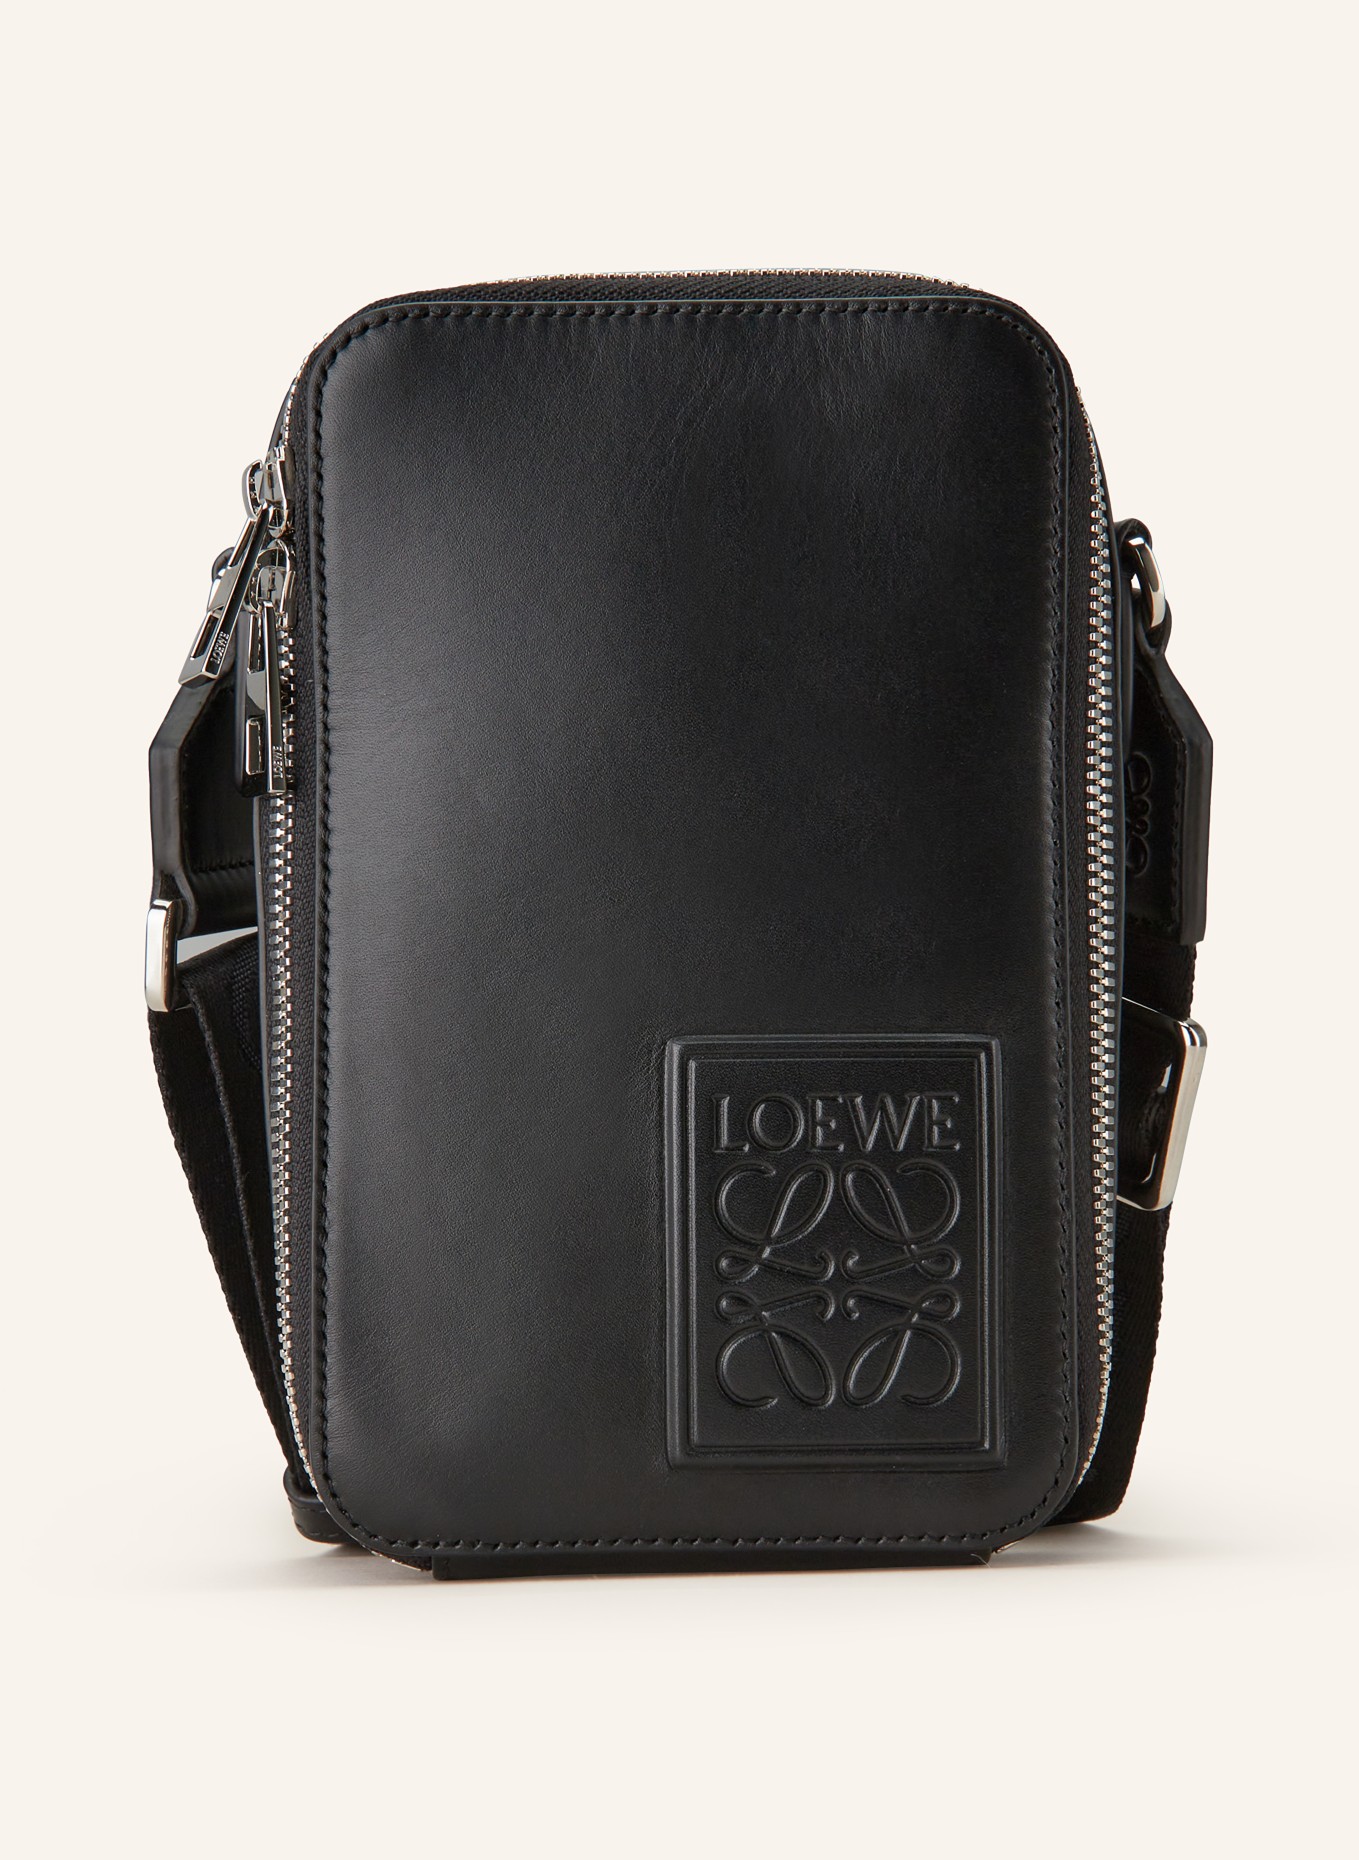 LOEWE Crossbody bag, Color: BLACK (Image 1)